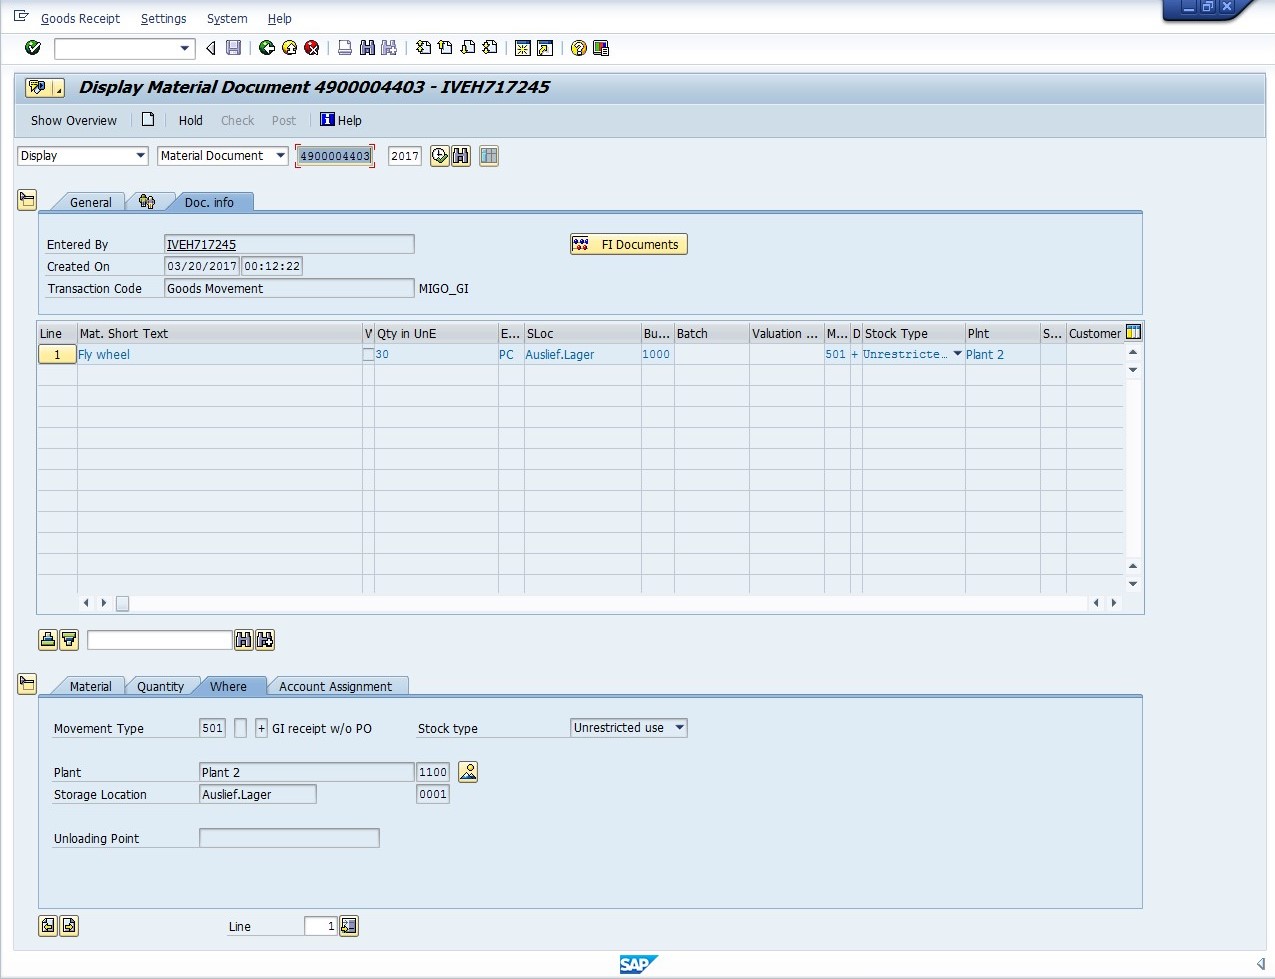 SAP Material Document Display